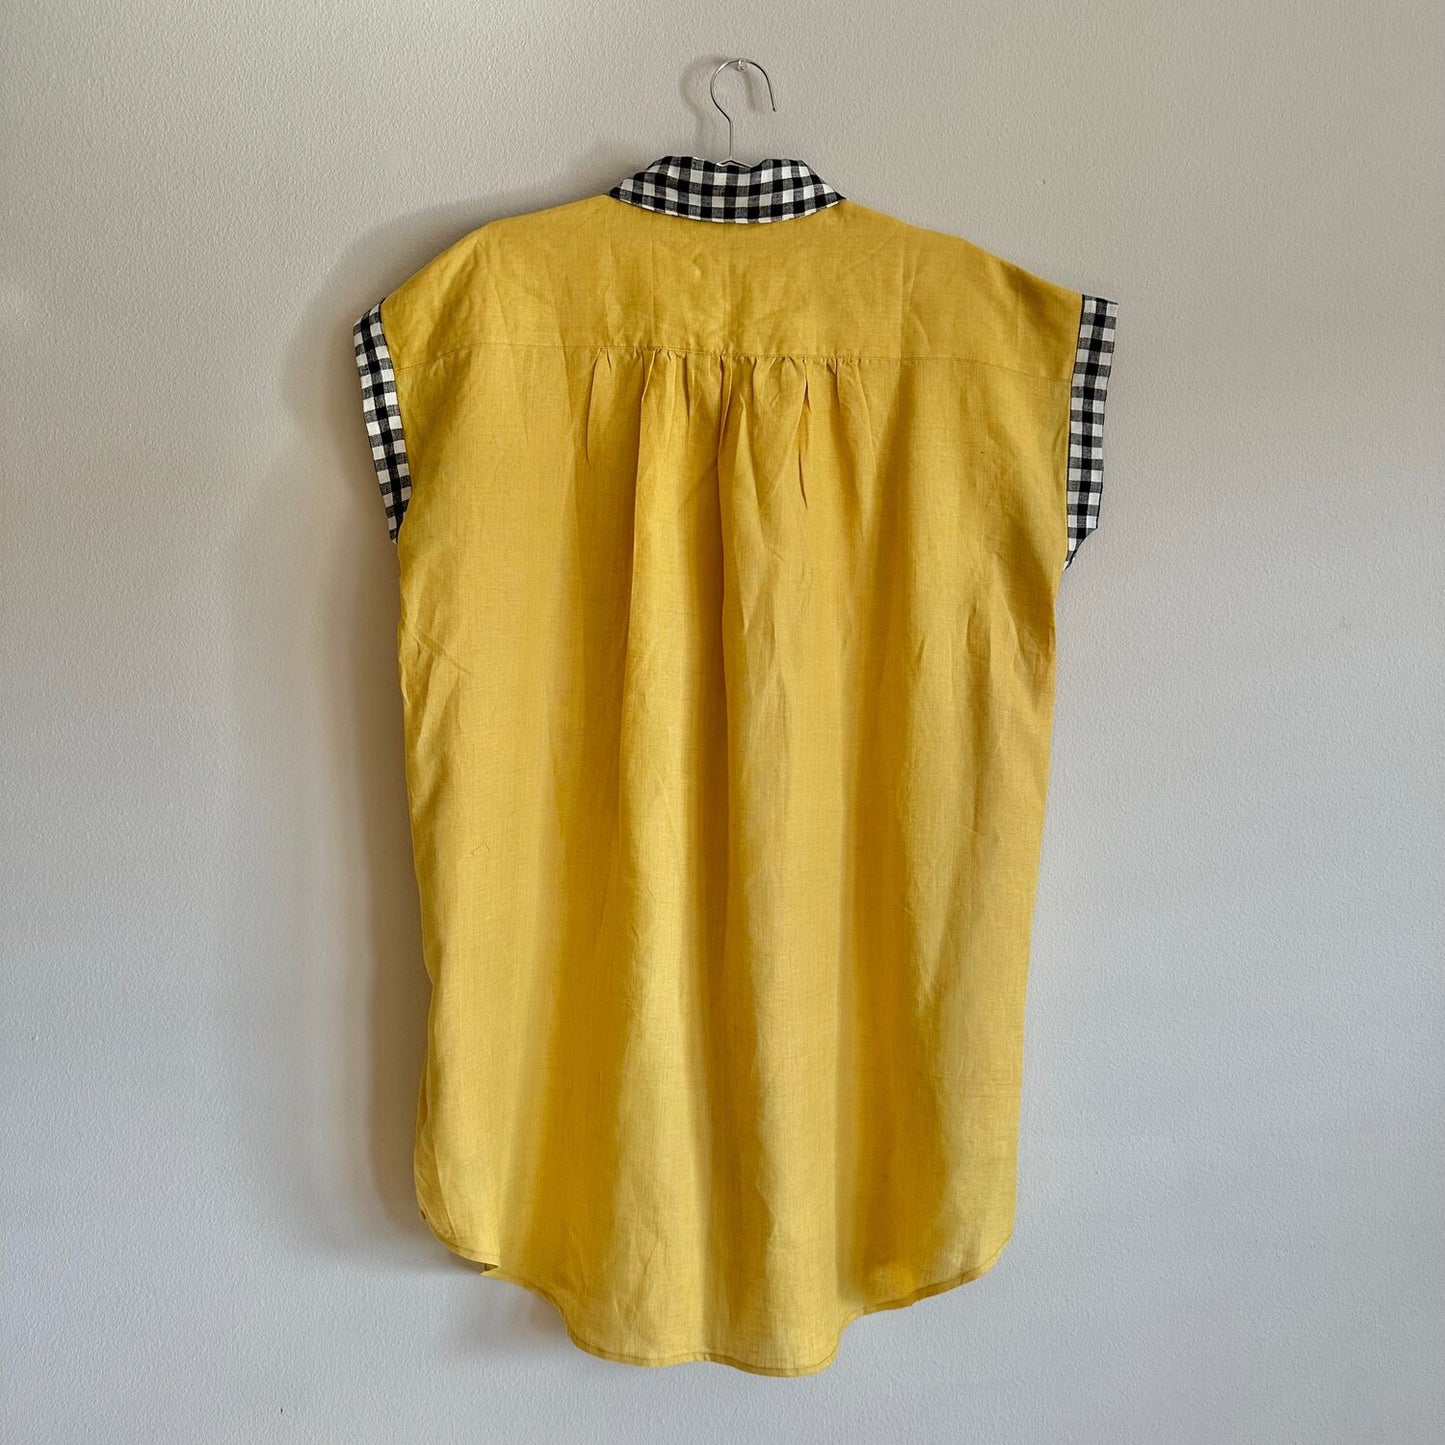 Willamette Checker Cab Linen Shirt Dress - SZ OSP